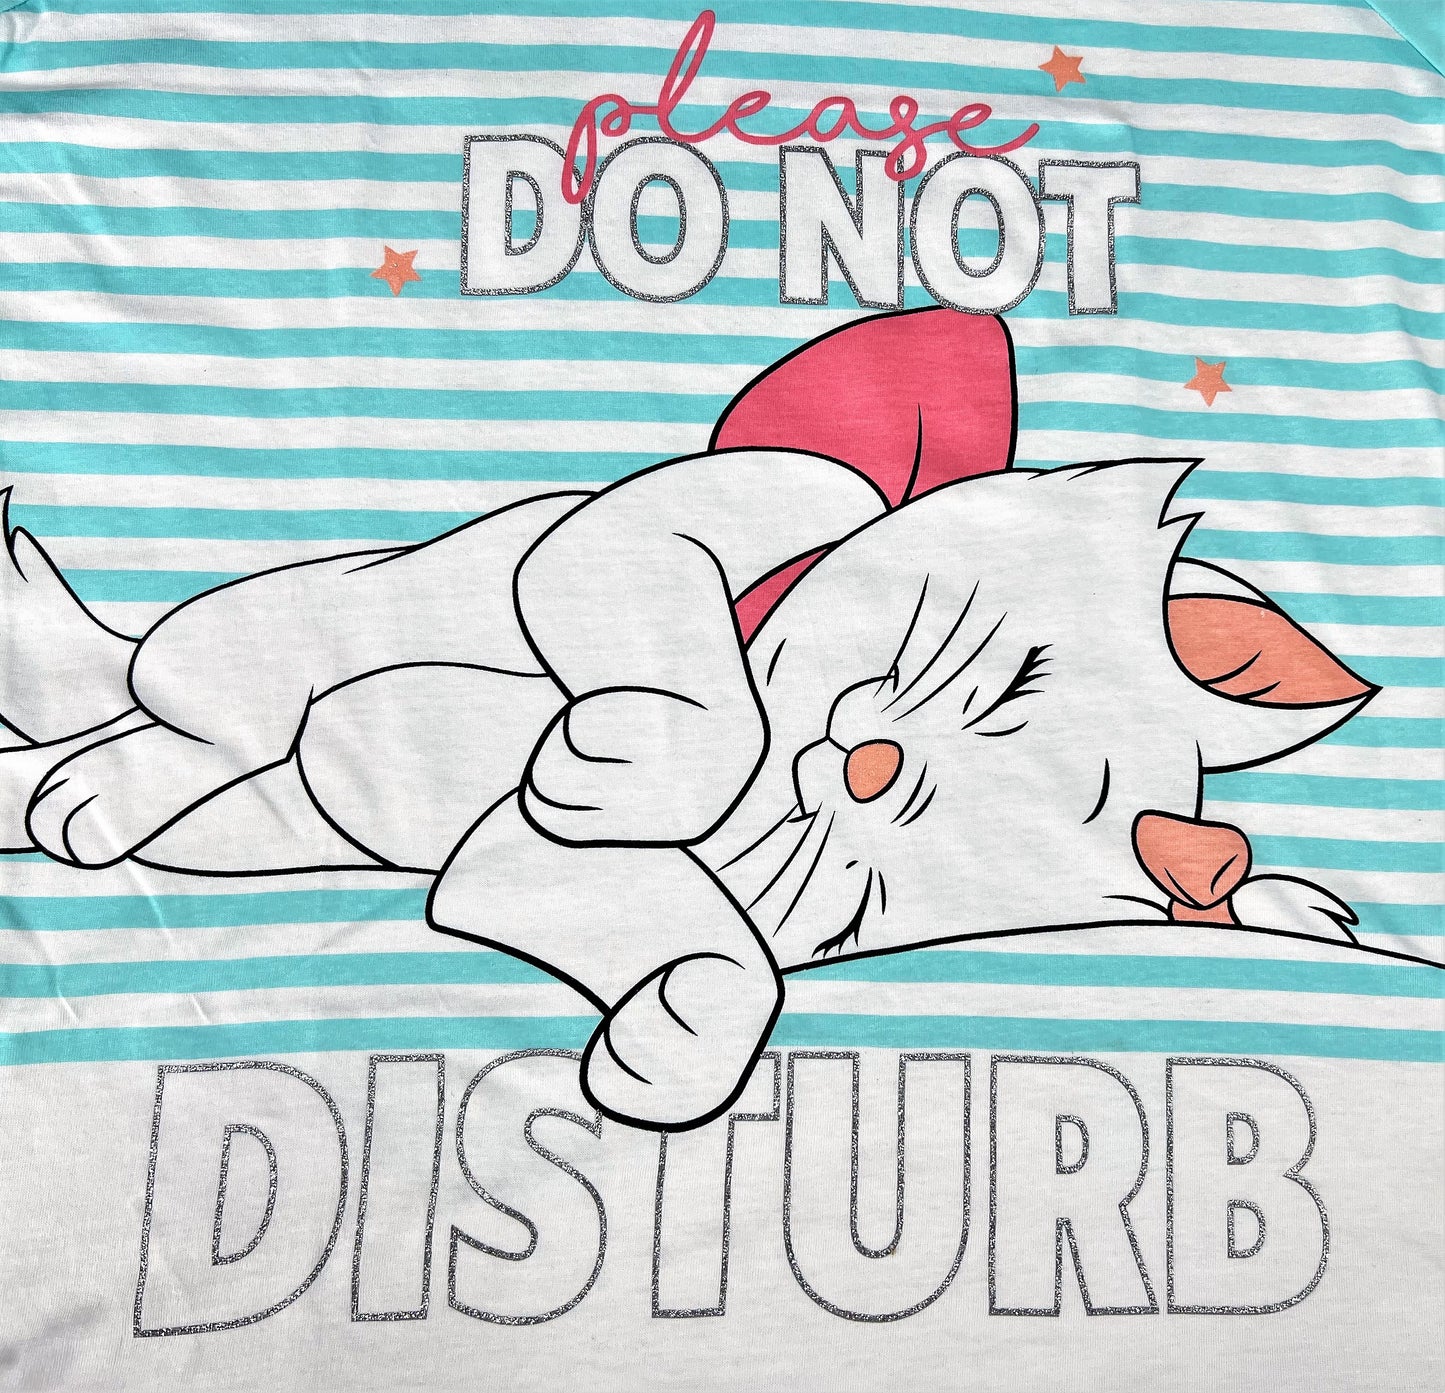 Ladies Disney Aristocats Marie "Do not Disturb" Pyjamas Sizes 8-14